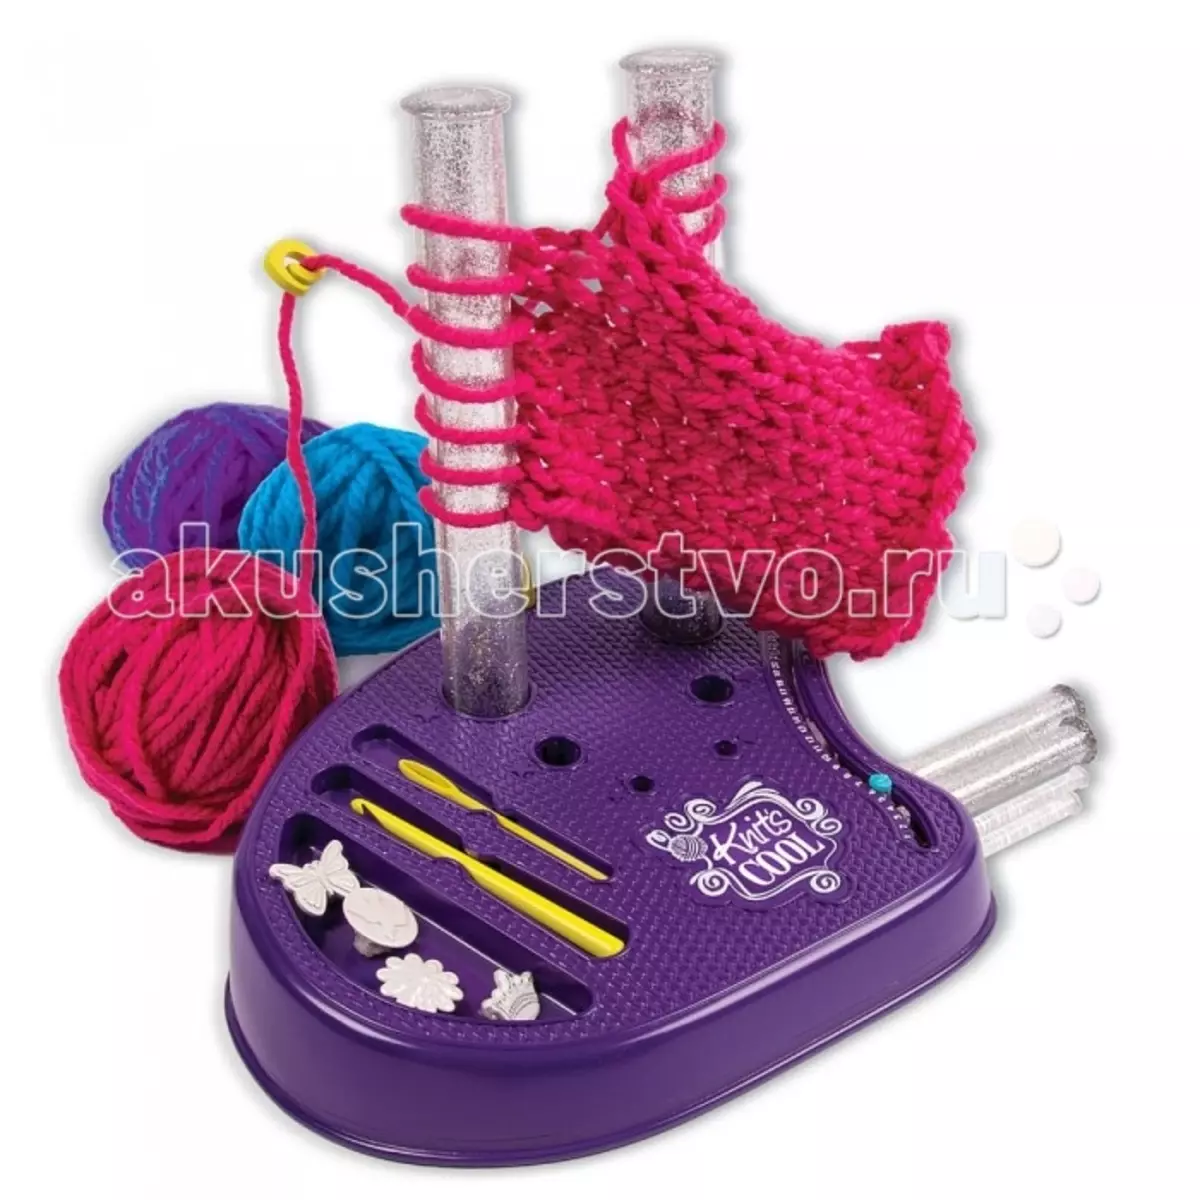 Pletenie Sets: Detské súpravy pre pletenie hračiek, tašky a batohov háčkovanie, nástroje pre kreativitu a darčekové pletenie súpravy 24509_38